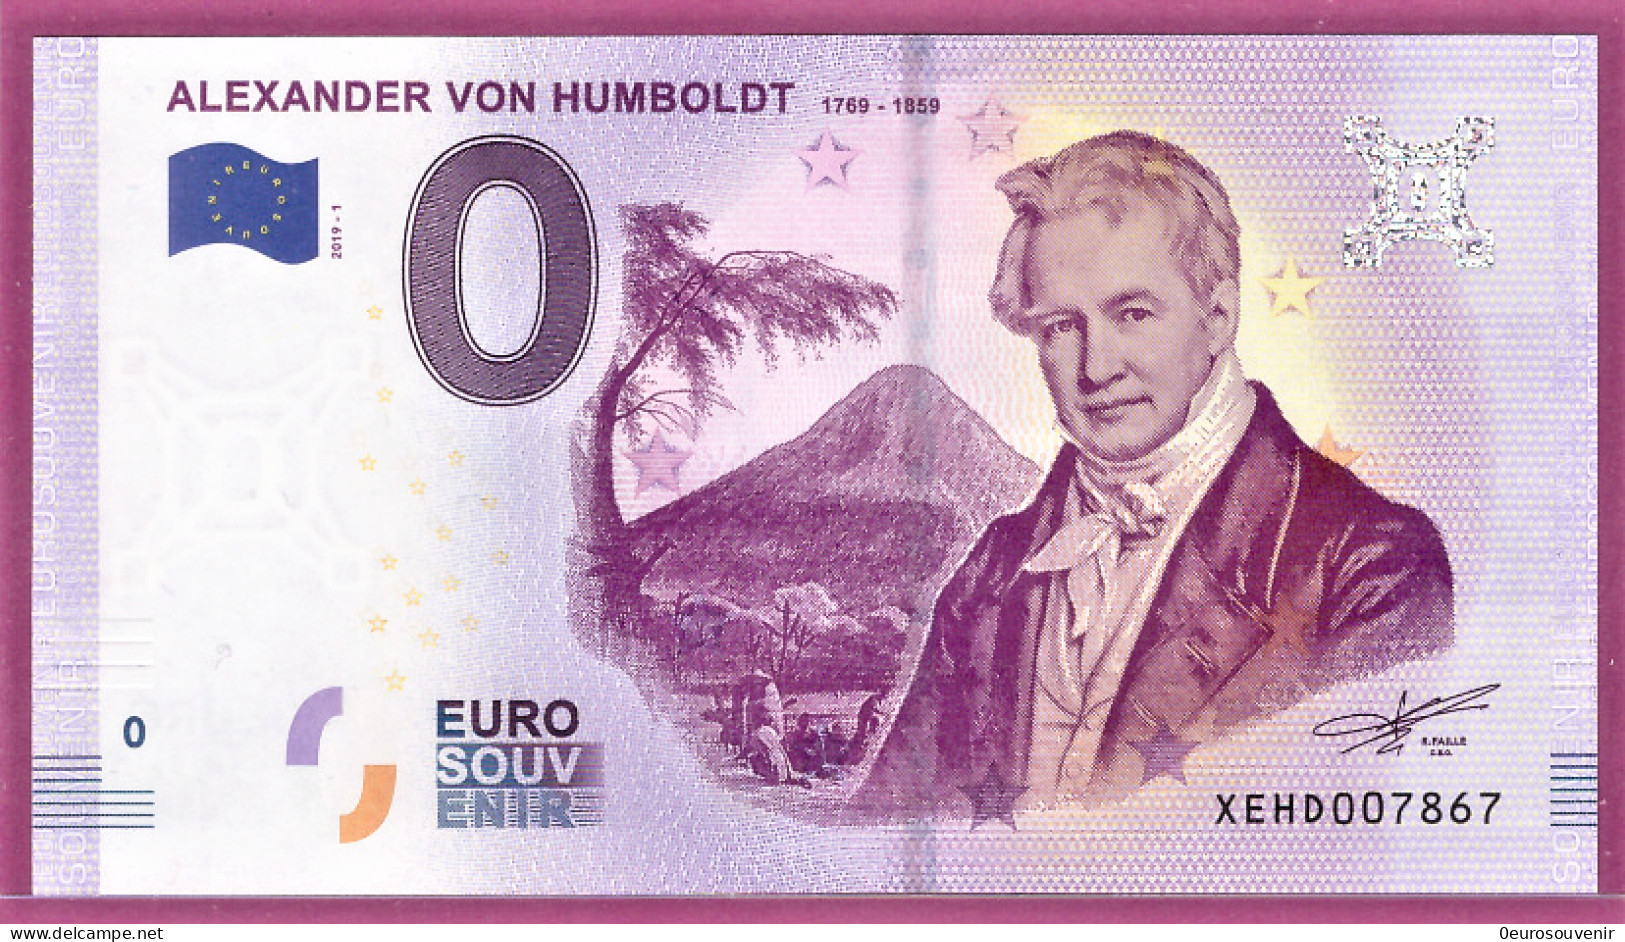 0-Euro XEHD 2019-1 ALEXANDER VON HUMBOLDT - 1769 - 1859 - Privatentwürfe